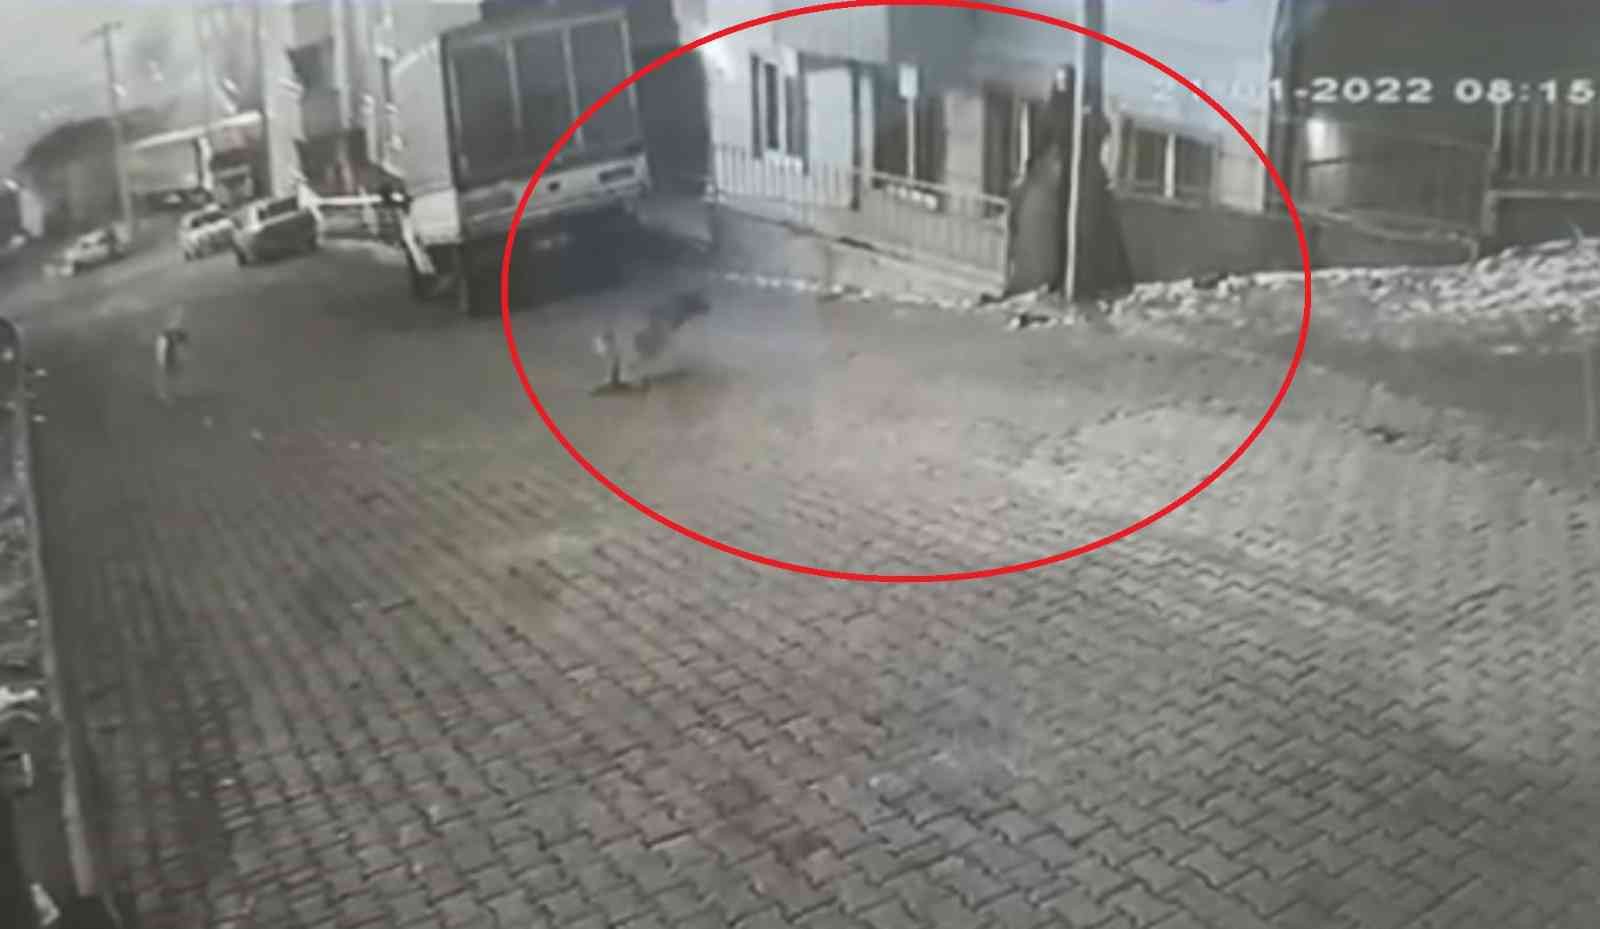 Karne almak için okula giden genç kıza sokak köpekleri saldırdı #kastamonu